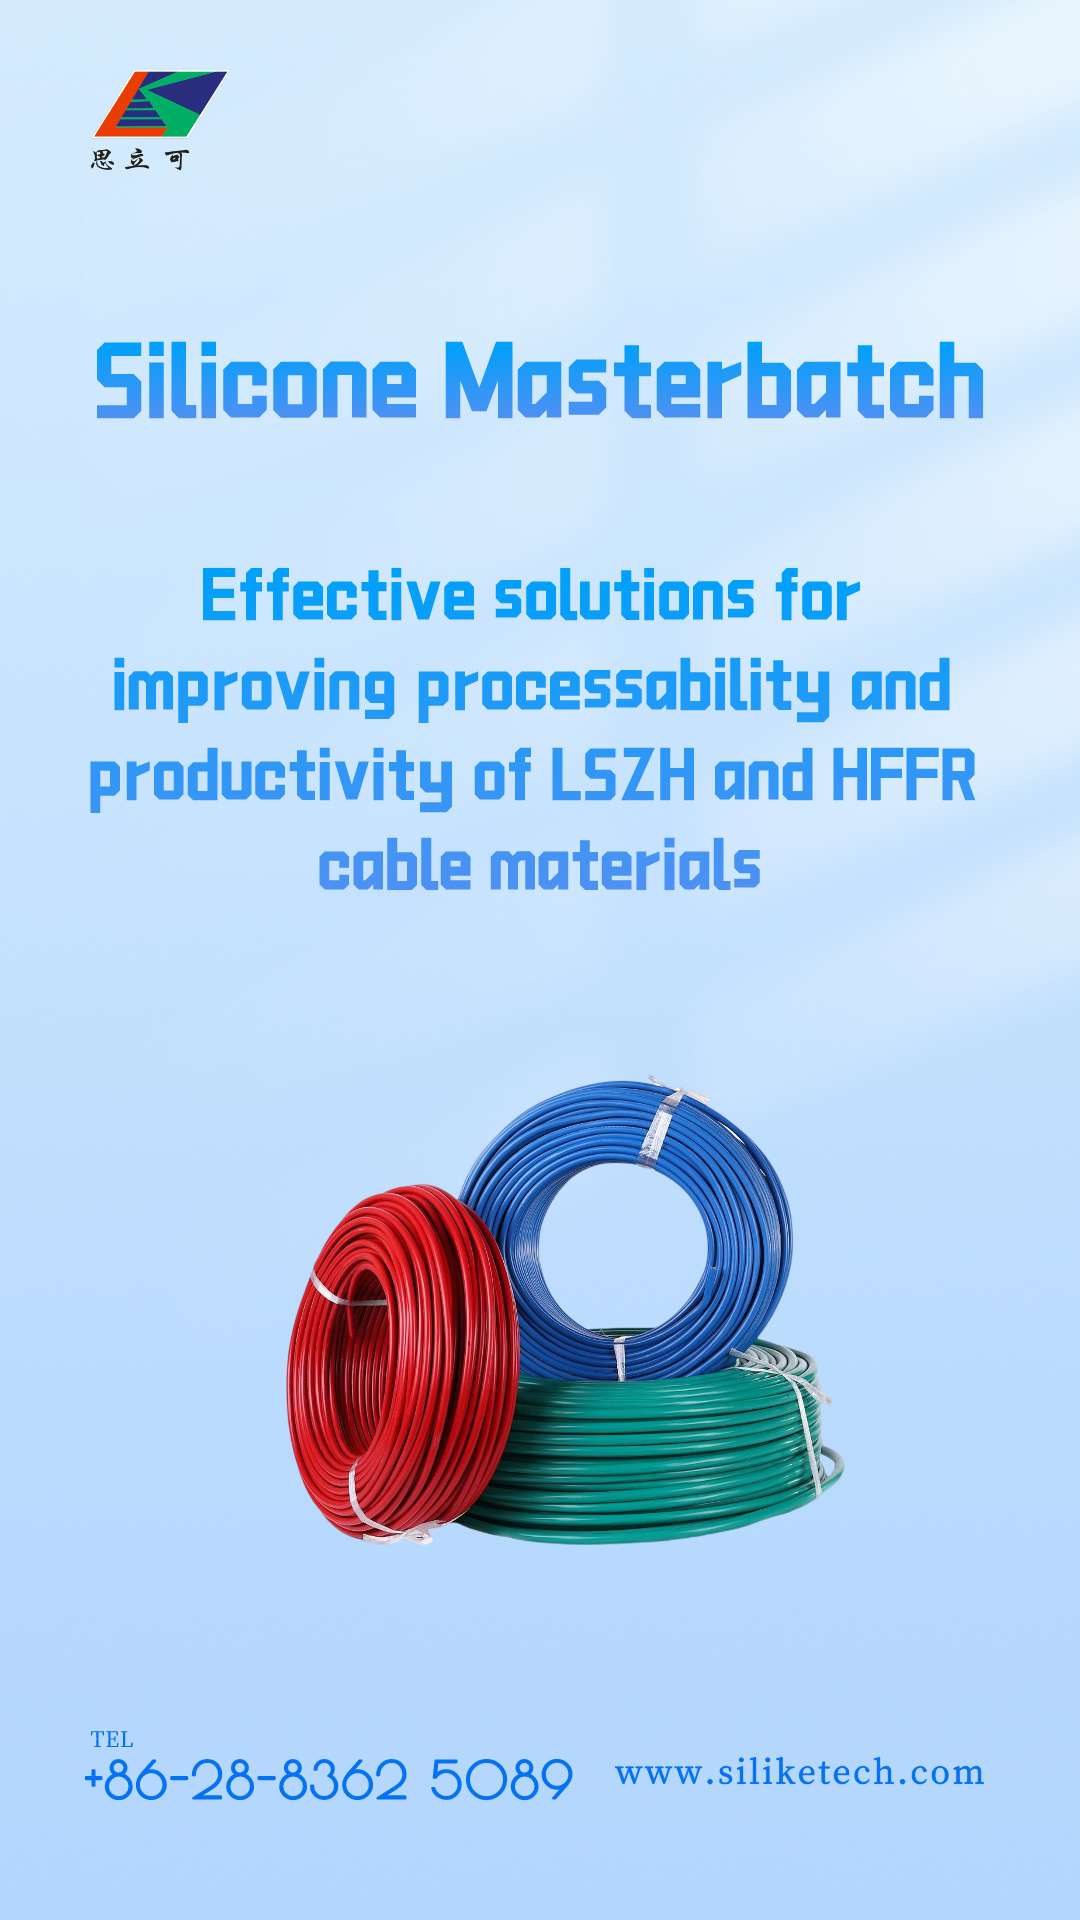 Solucións eficaces para mellorar a procesabilidade e produtividade dos materiais de cable LSZH e HFFR